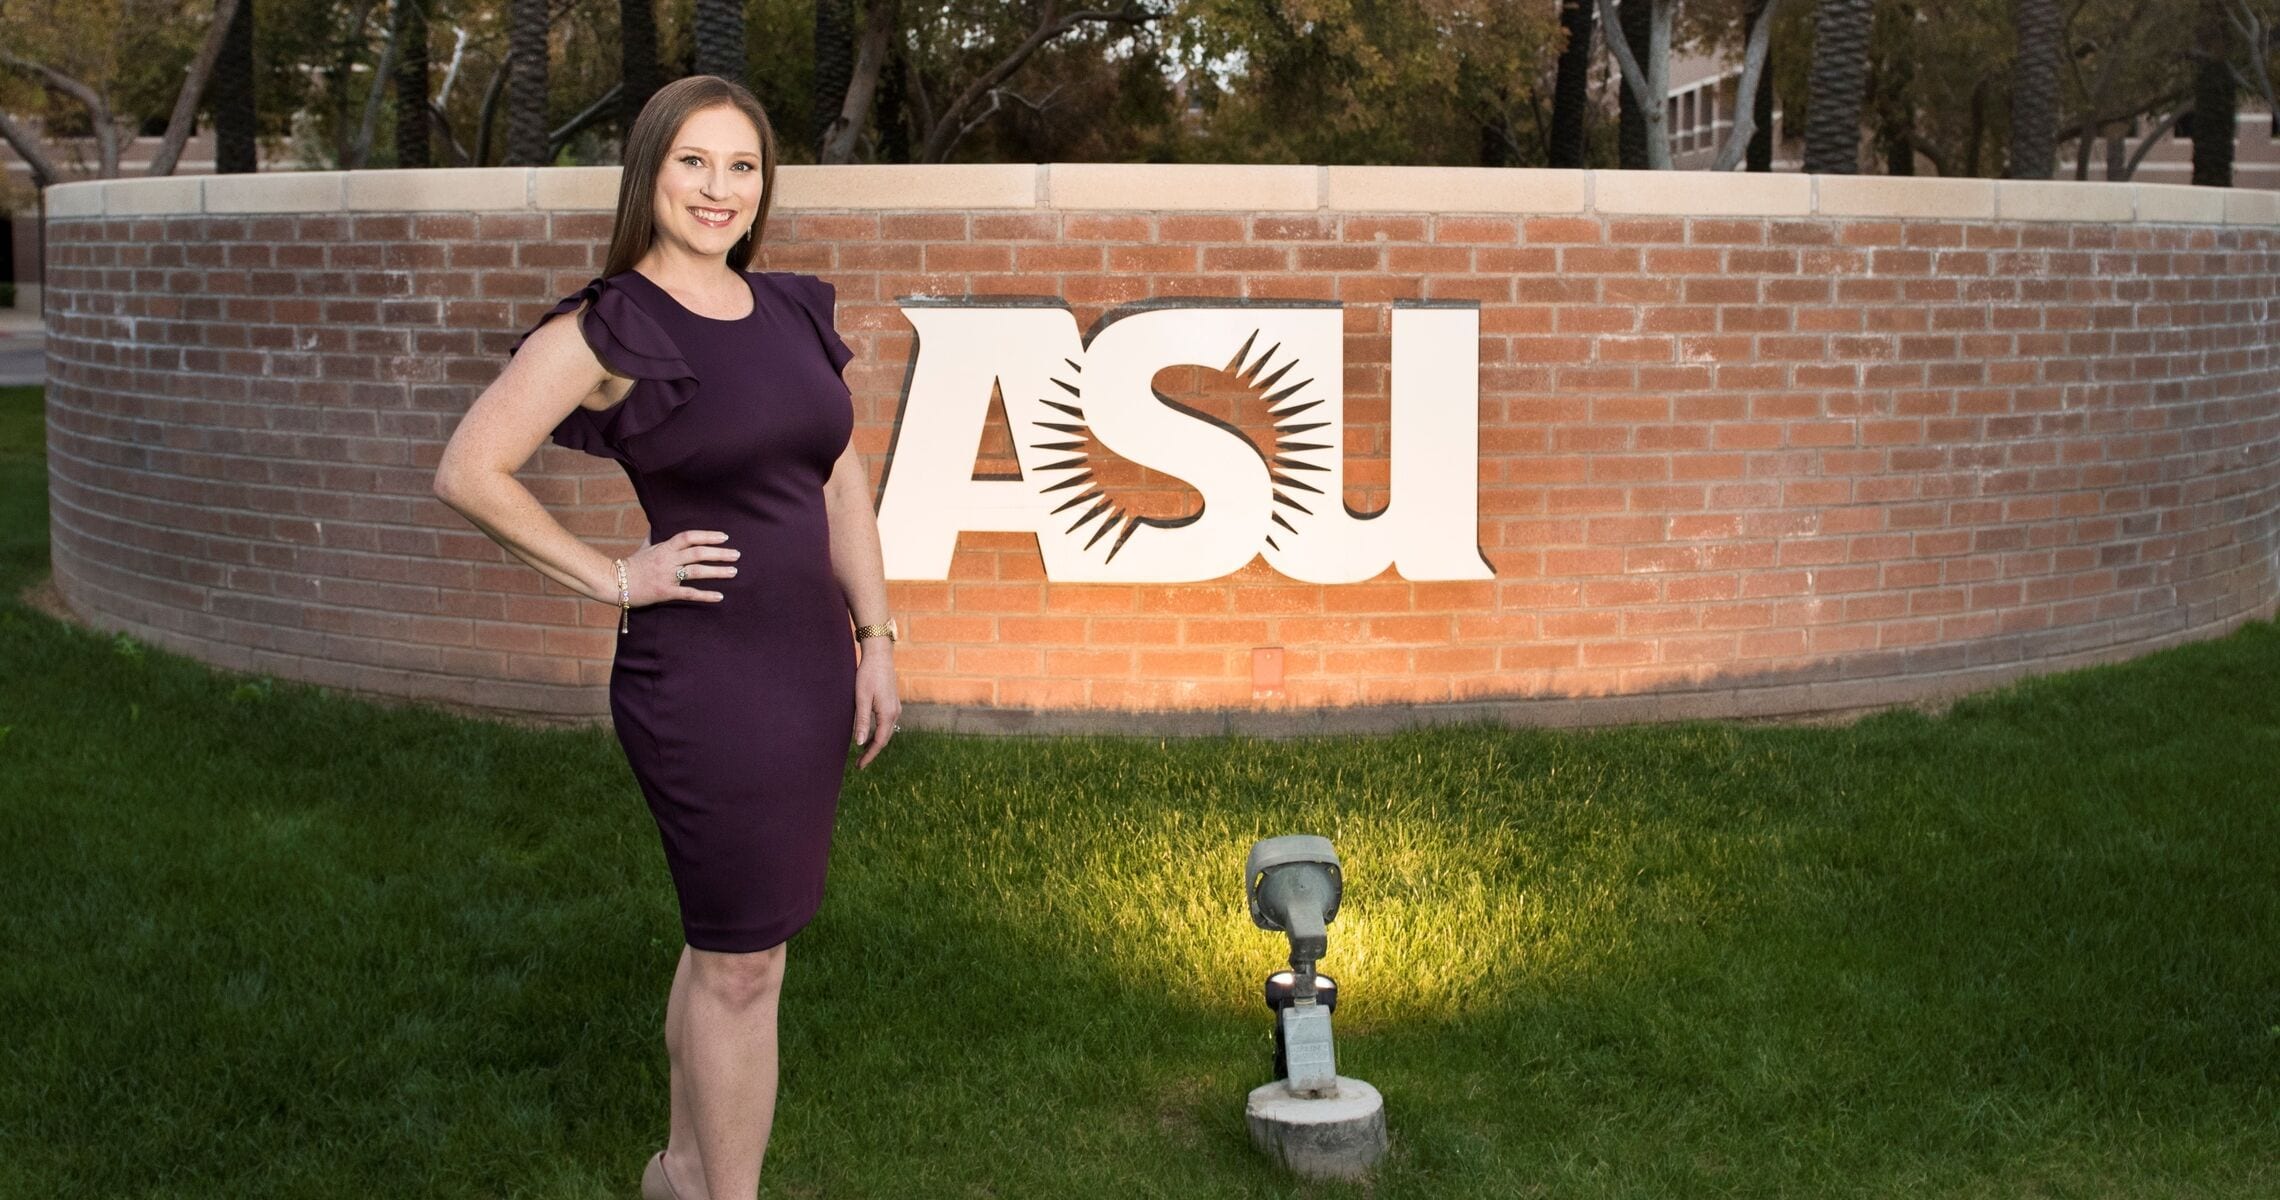 ASU Foundation - Elizabeth Muncal